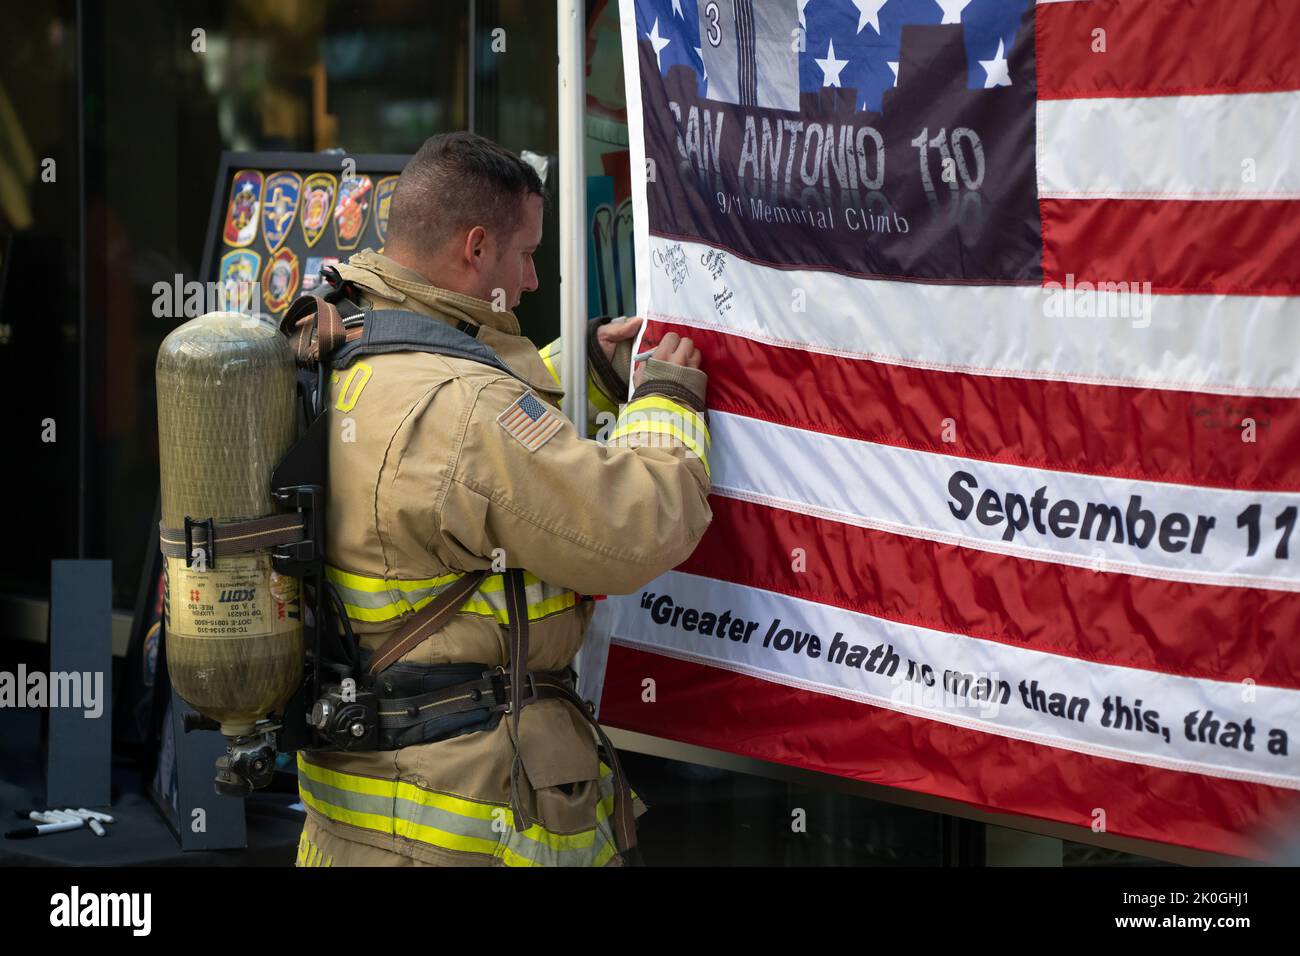 Ein Feuerwehrmann signiert eine Gedenkflagge, nachdem er an der San Antonio 110 9/11 Gedenkstätte teilgenommen hat, die den Tower of the Americas hochklettert. Stockfoto